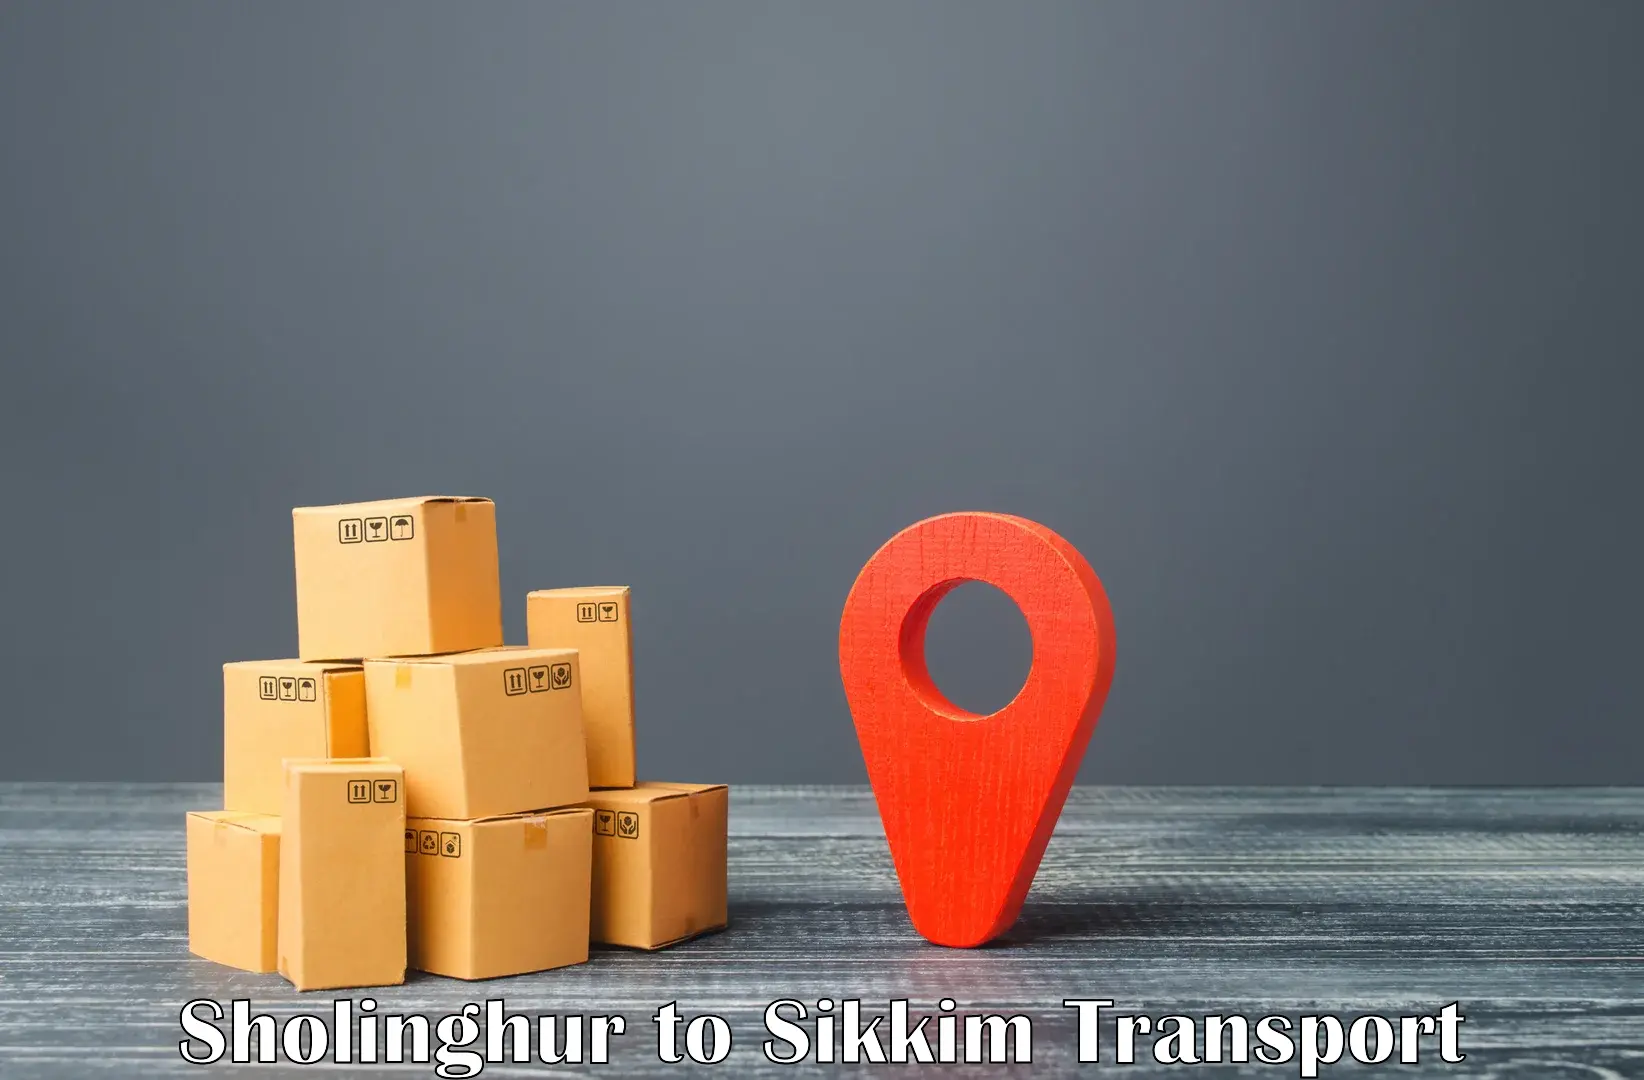 Road transport online services Sholinghur to Sikkim